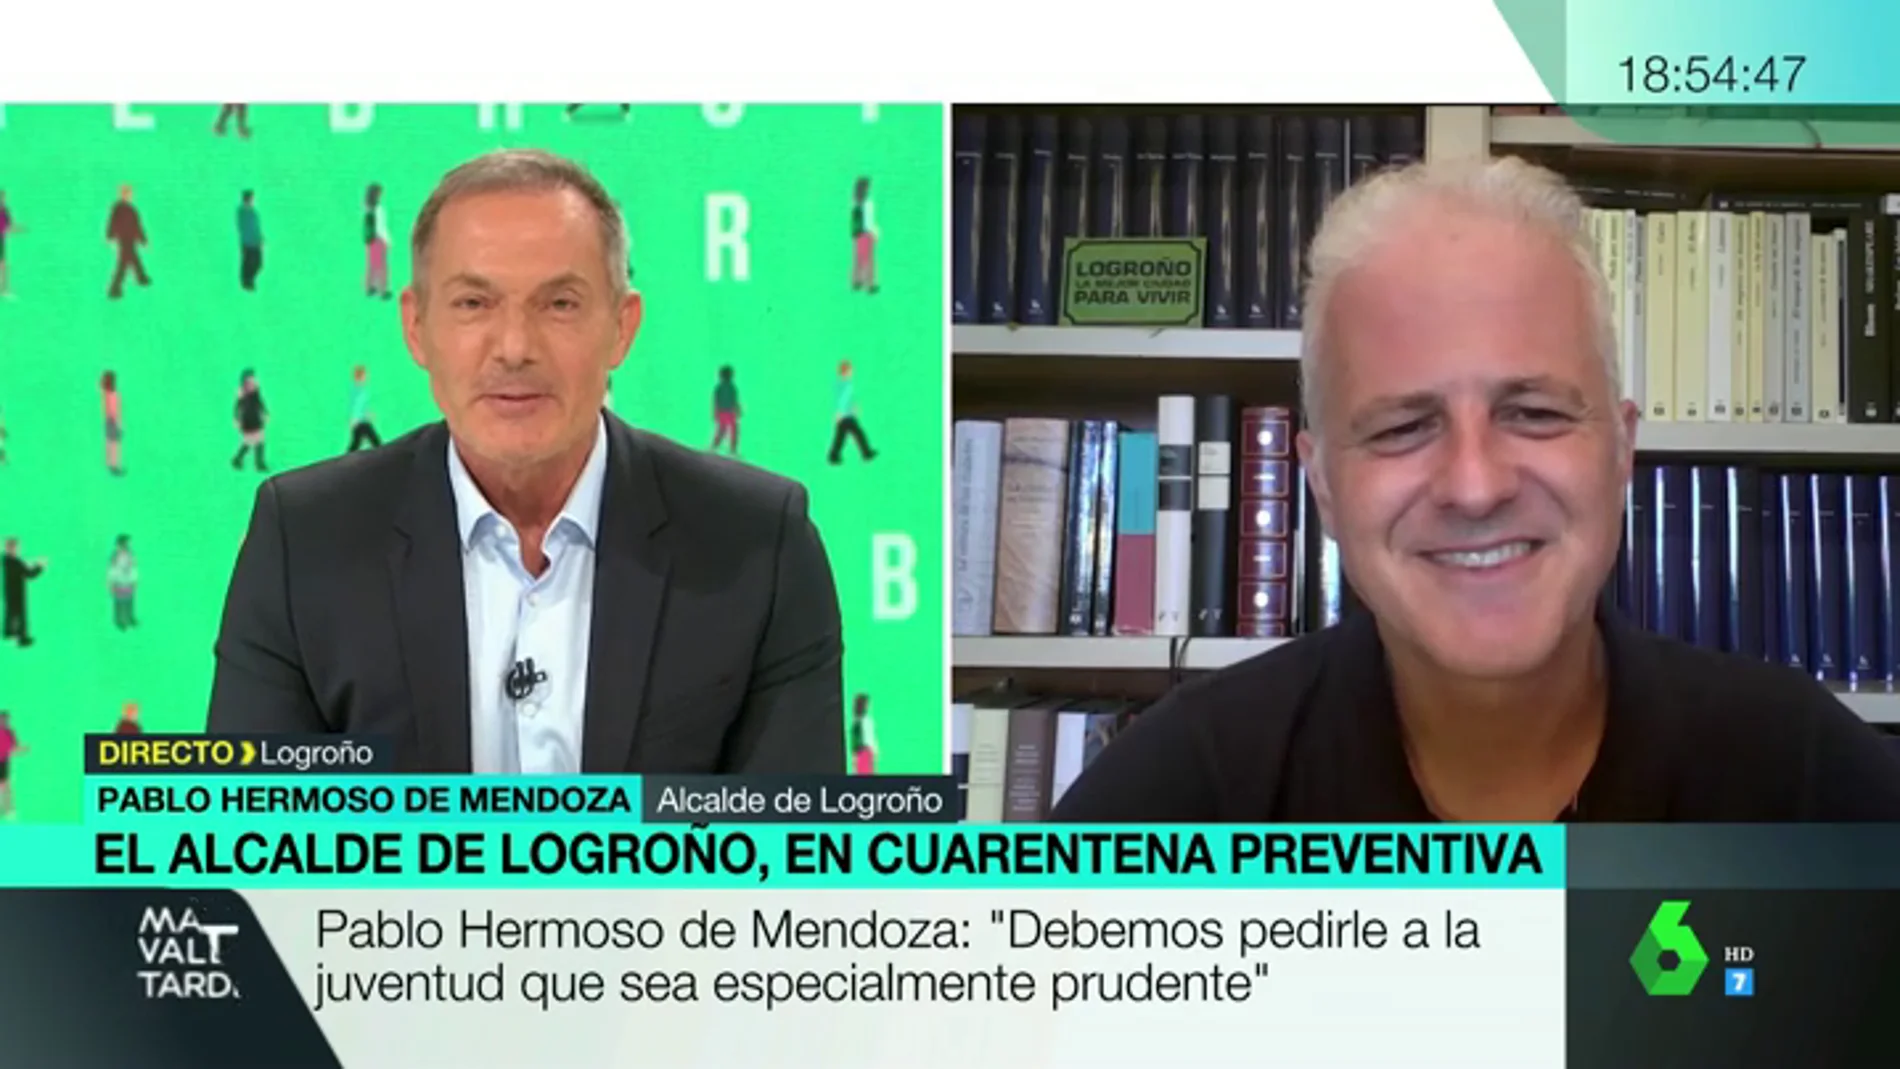 El alcalde de Logroño, aislado tras estar en contacto con un positivo en Covid: "Tenemos que ser extremadamente cautos"